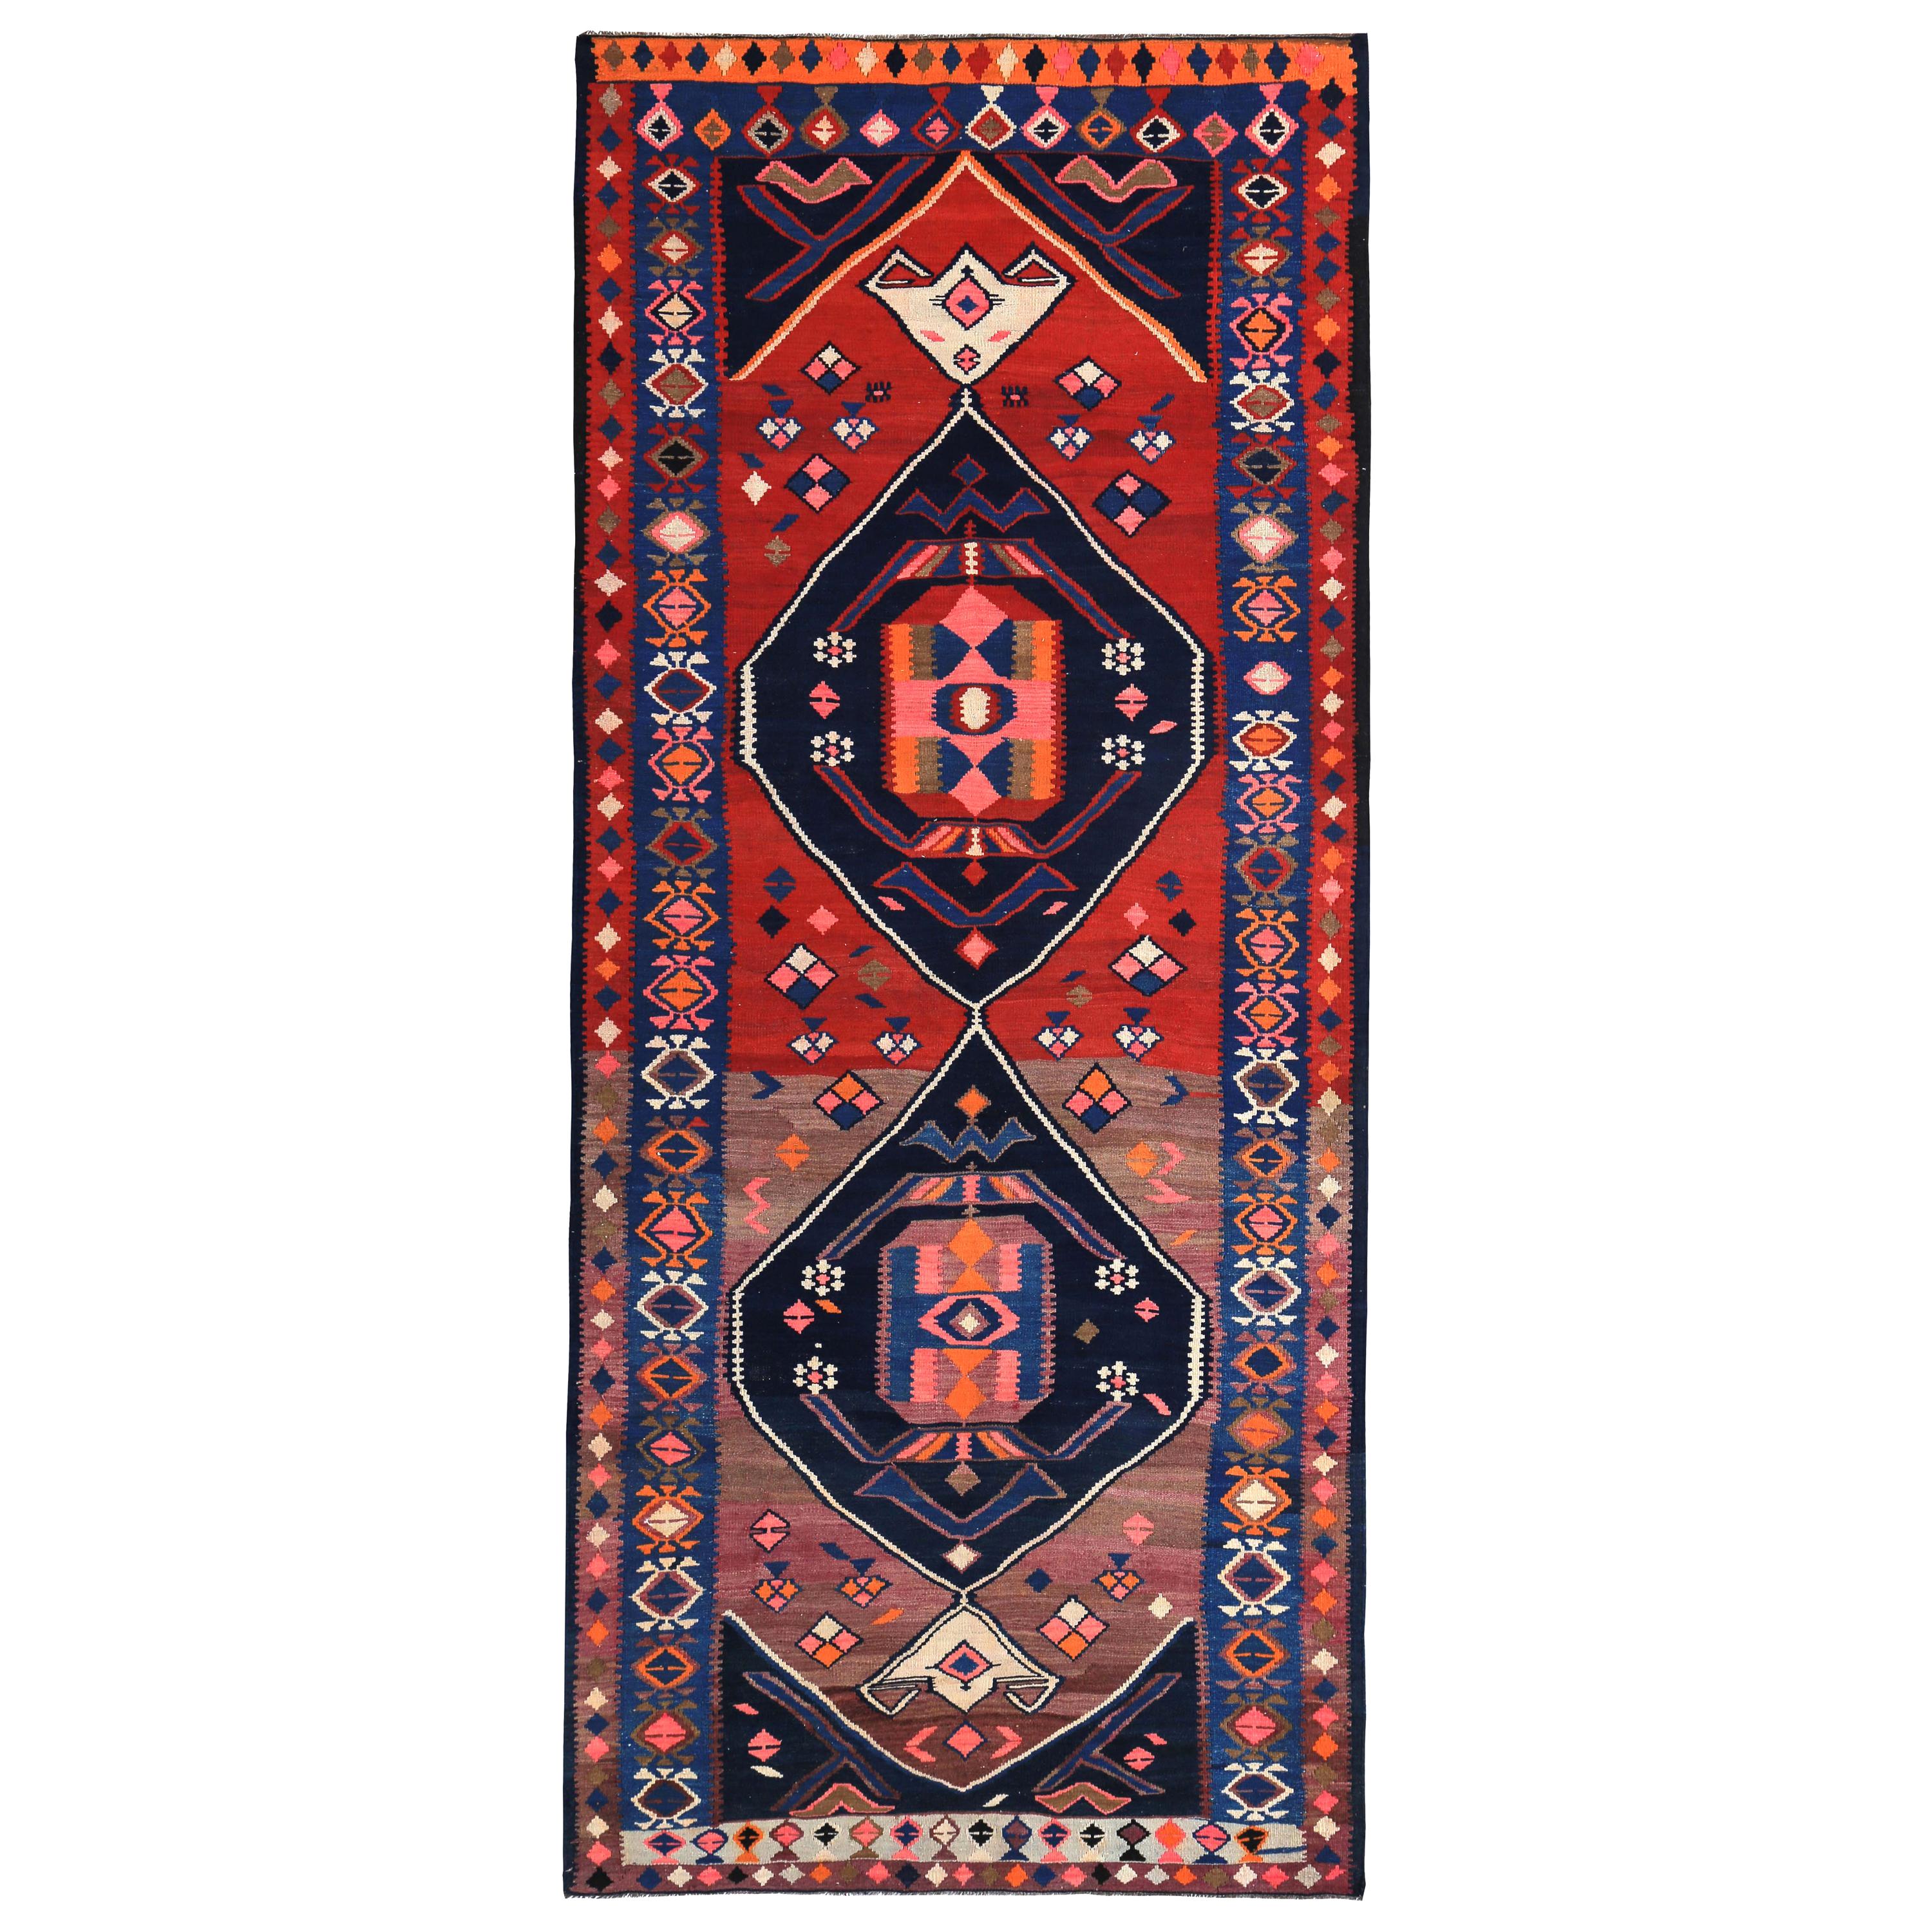 Tapis de couloir Kilim turc moderne avec motif tribal bleu, rouge et rose